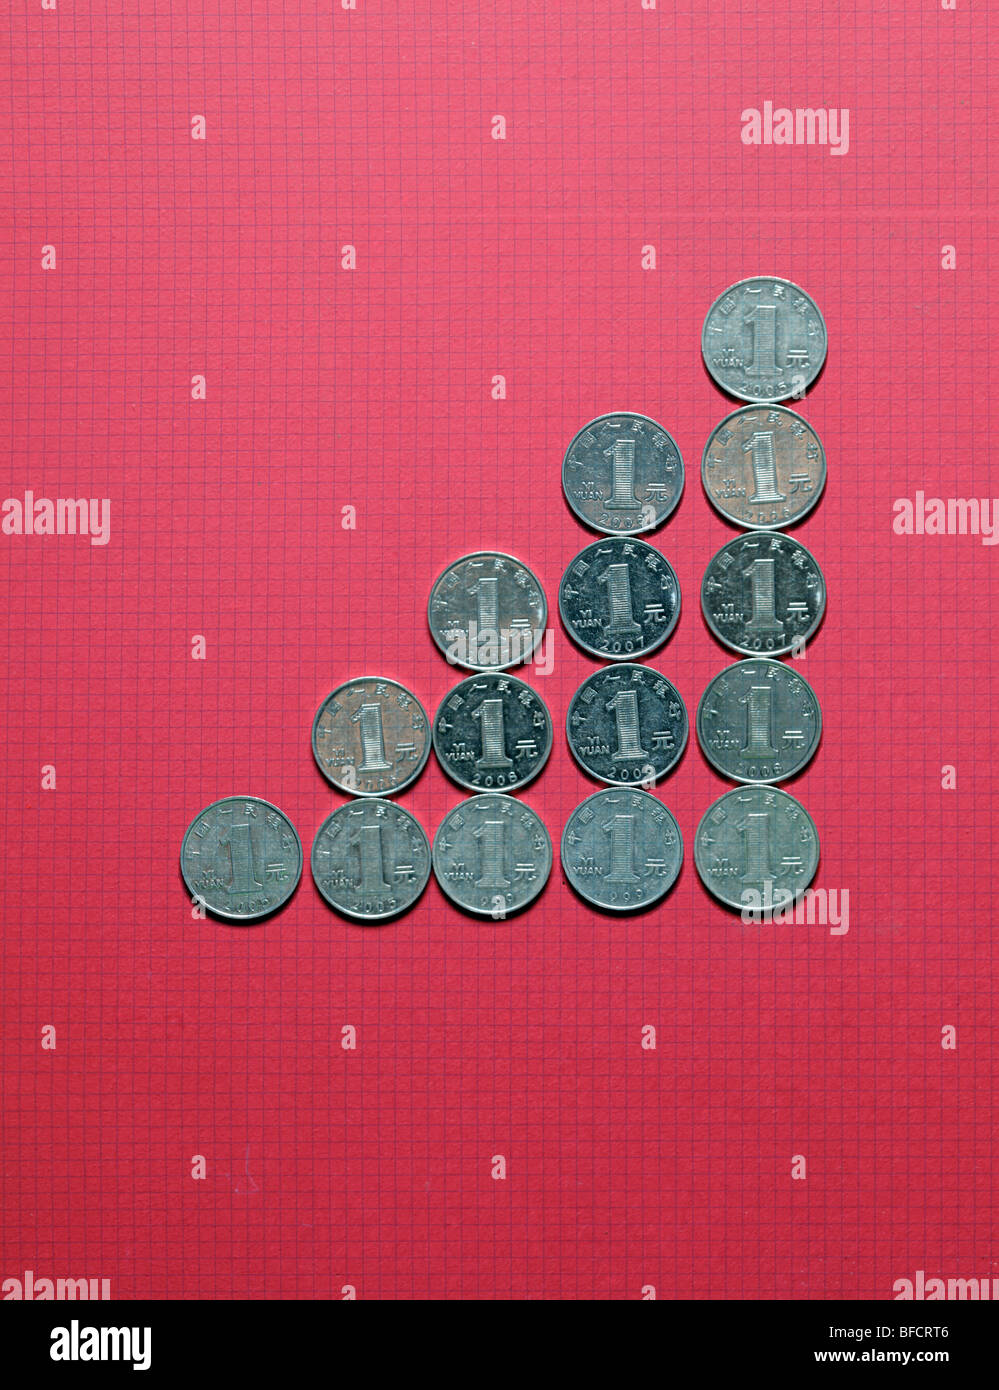 Chinesisches Geld verwendet, um ein Diagramm, Wachstum auf rotem Grund. Stockfoto